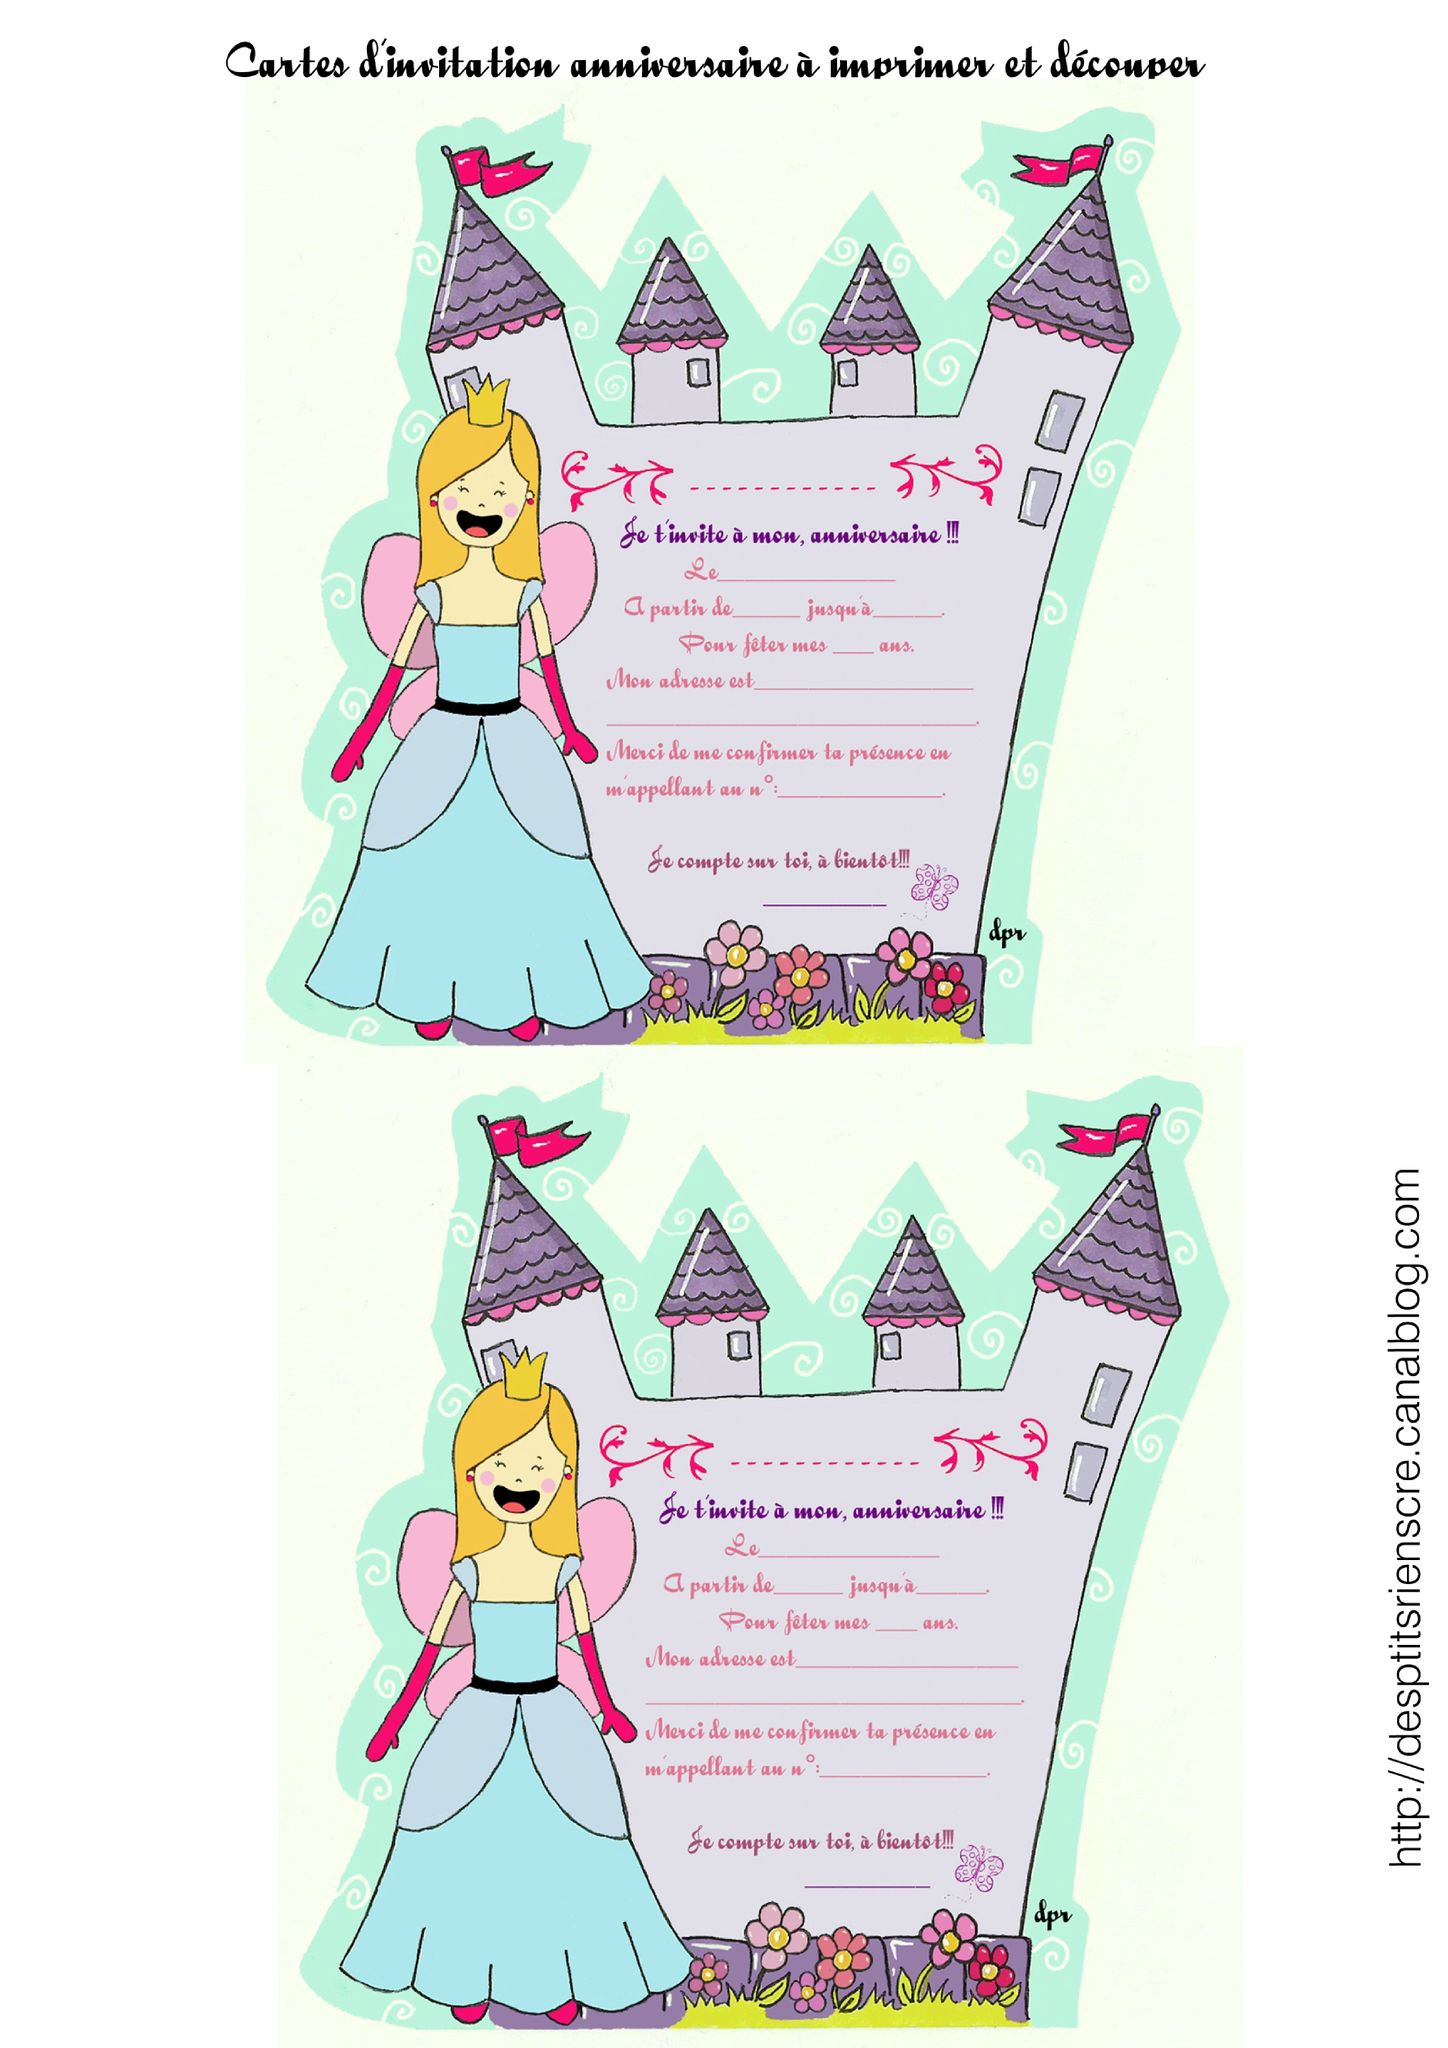 Cartes D Invitation Anniversaire Princesse A Imprimer2 Copie Photo De A Imprimer Des P Tits Riens